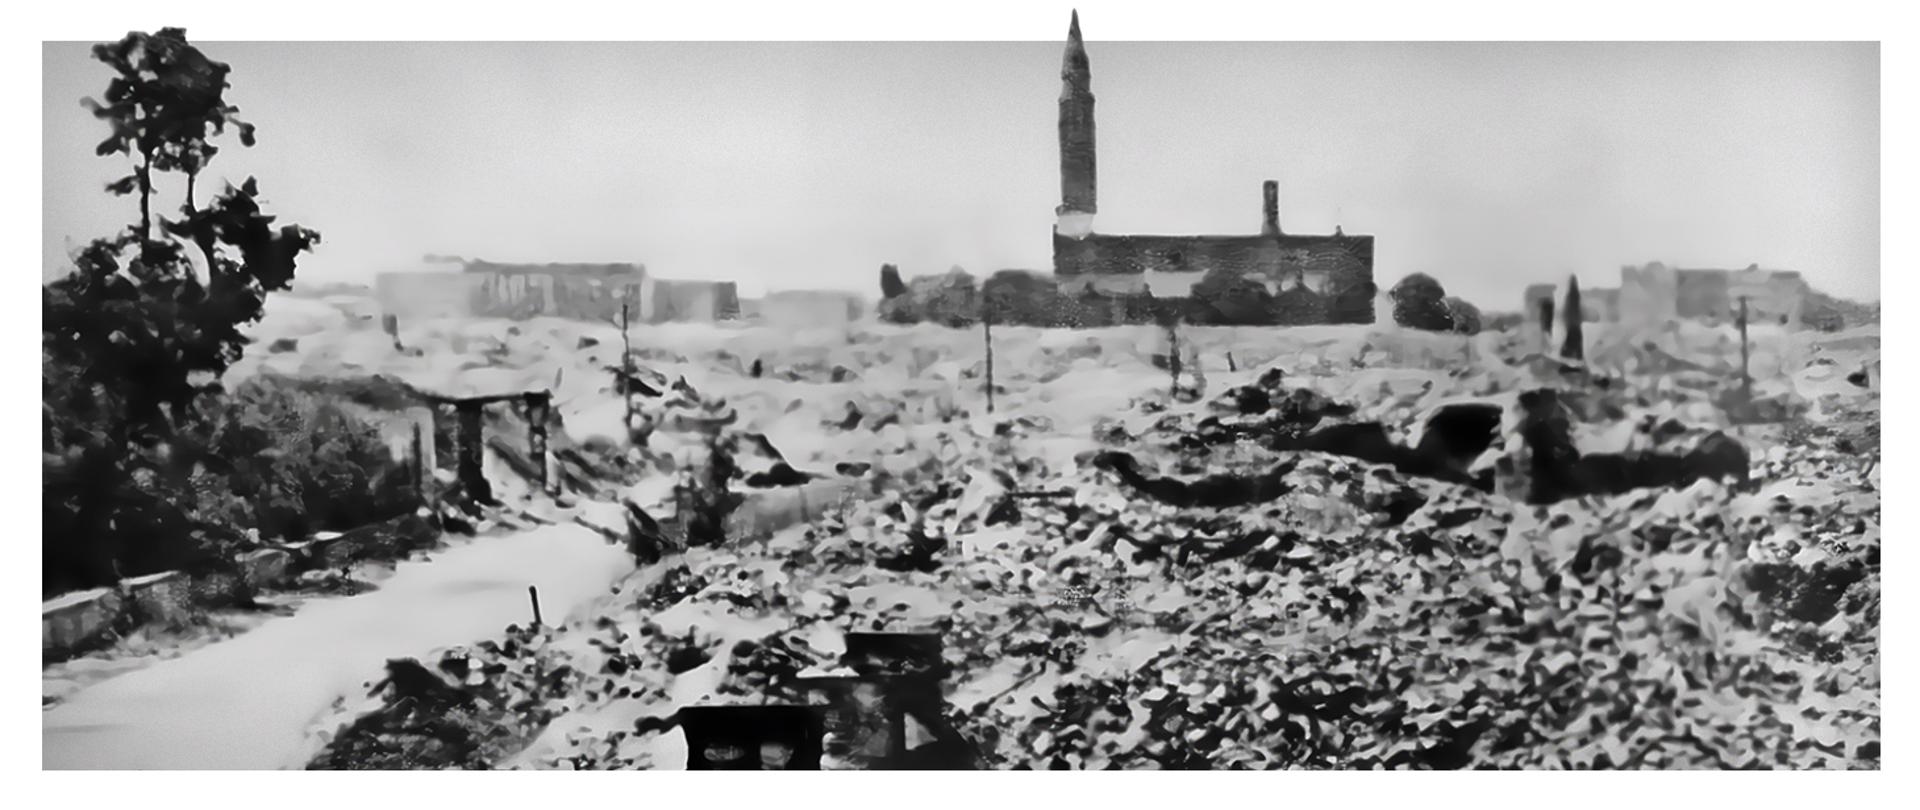 czarnobiała fotografia ruin miasta z zarysem kościoła w tle